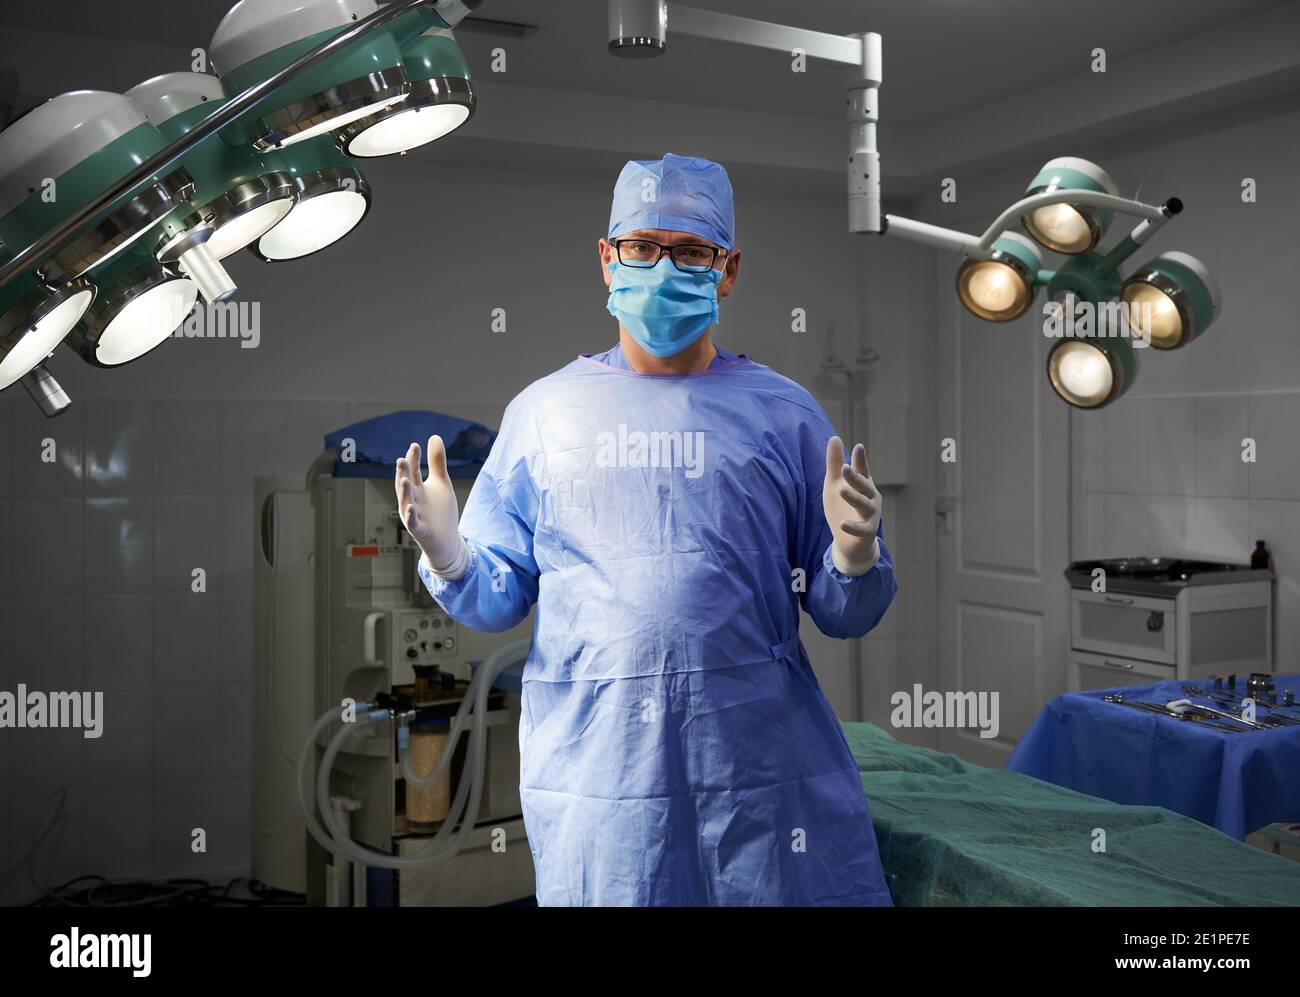 Porträt eines Chirurgen, der im Operationssaal des Krankenhauses auf die Kamera schaut. Mann Arzt trägt OP-Uniform, sterile Handschuhe, Gesichtsschutz, medizinische Kappe. Konzept der Medizin, Chirurgie Stockfoto